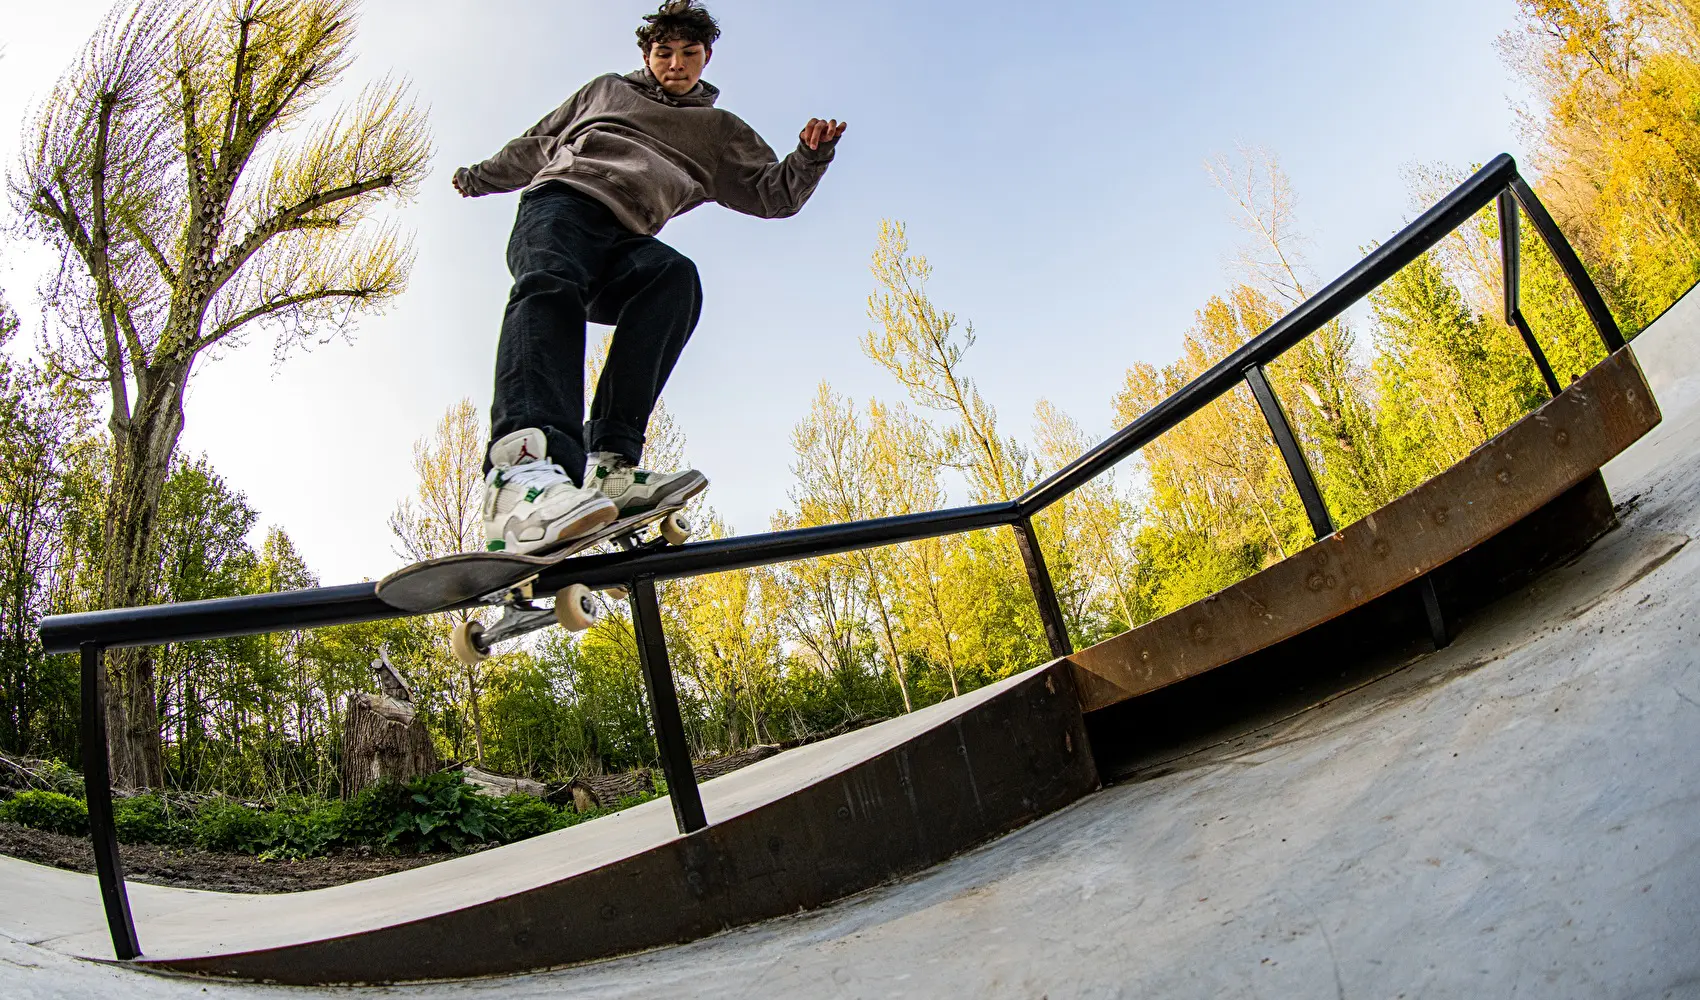 Nine Yards Skatepark Capelle aan den Ijssel Diego Broest